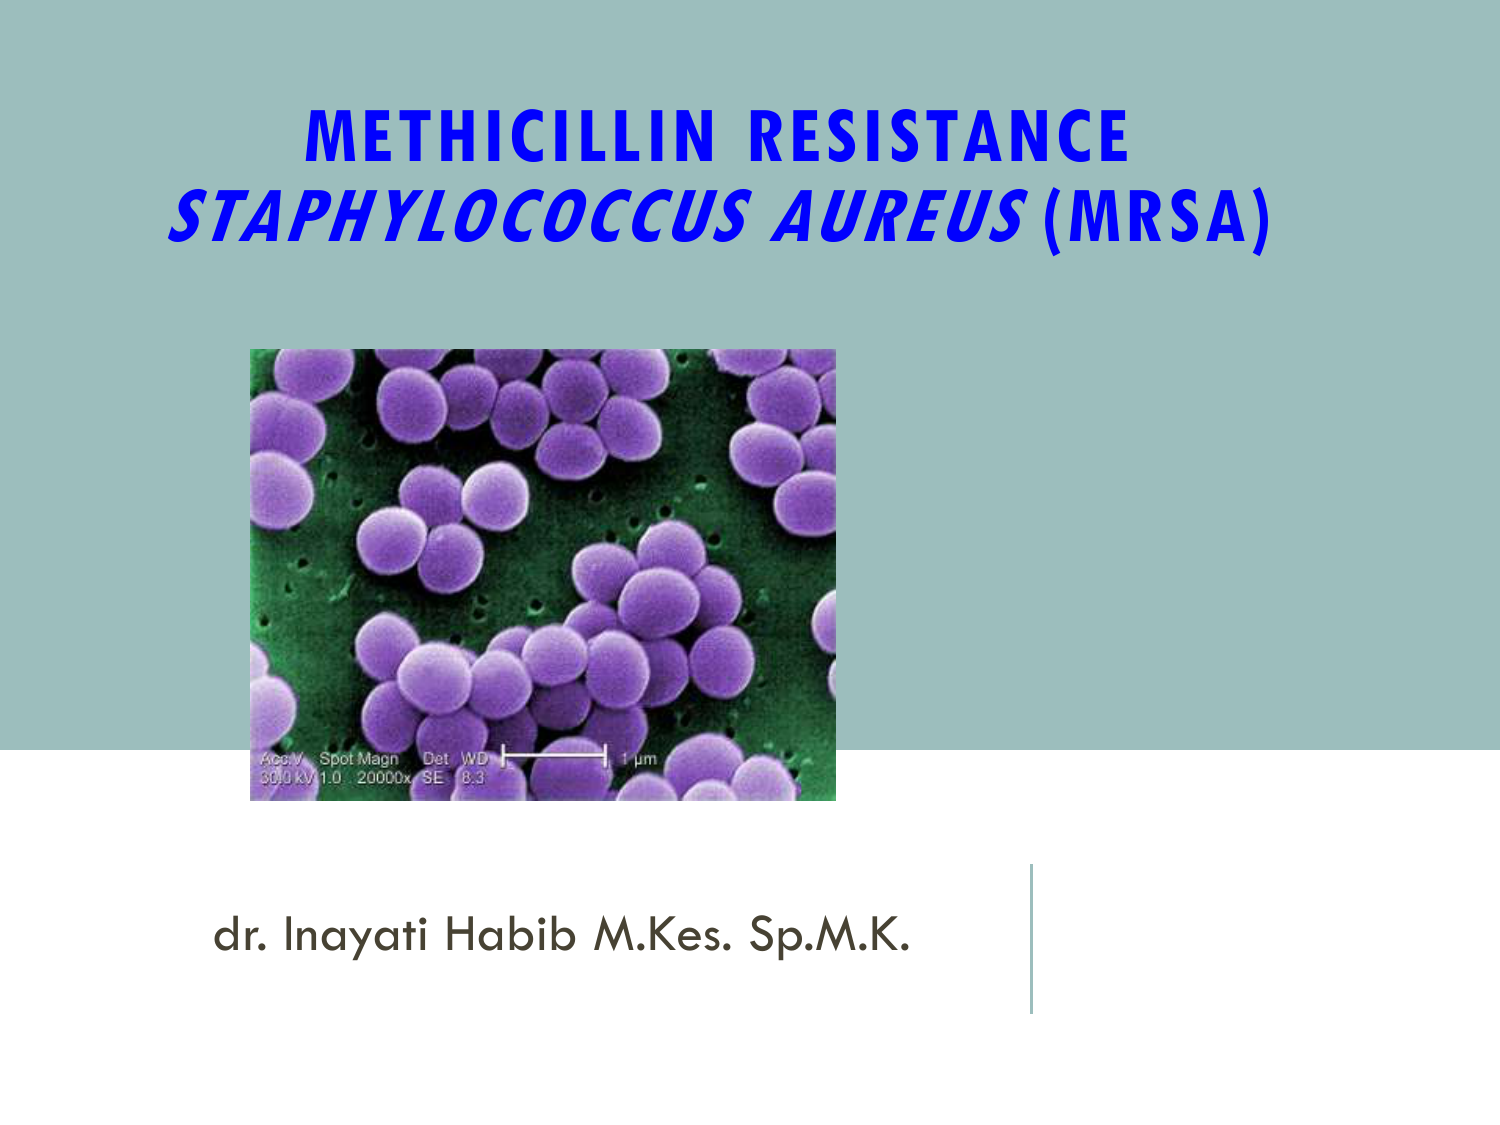 Staphylococcus aureus 5